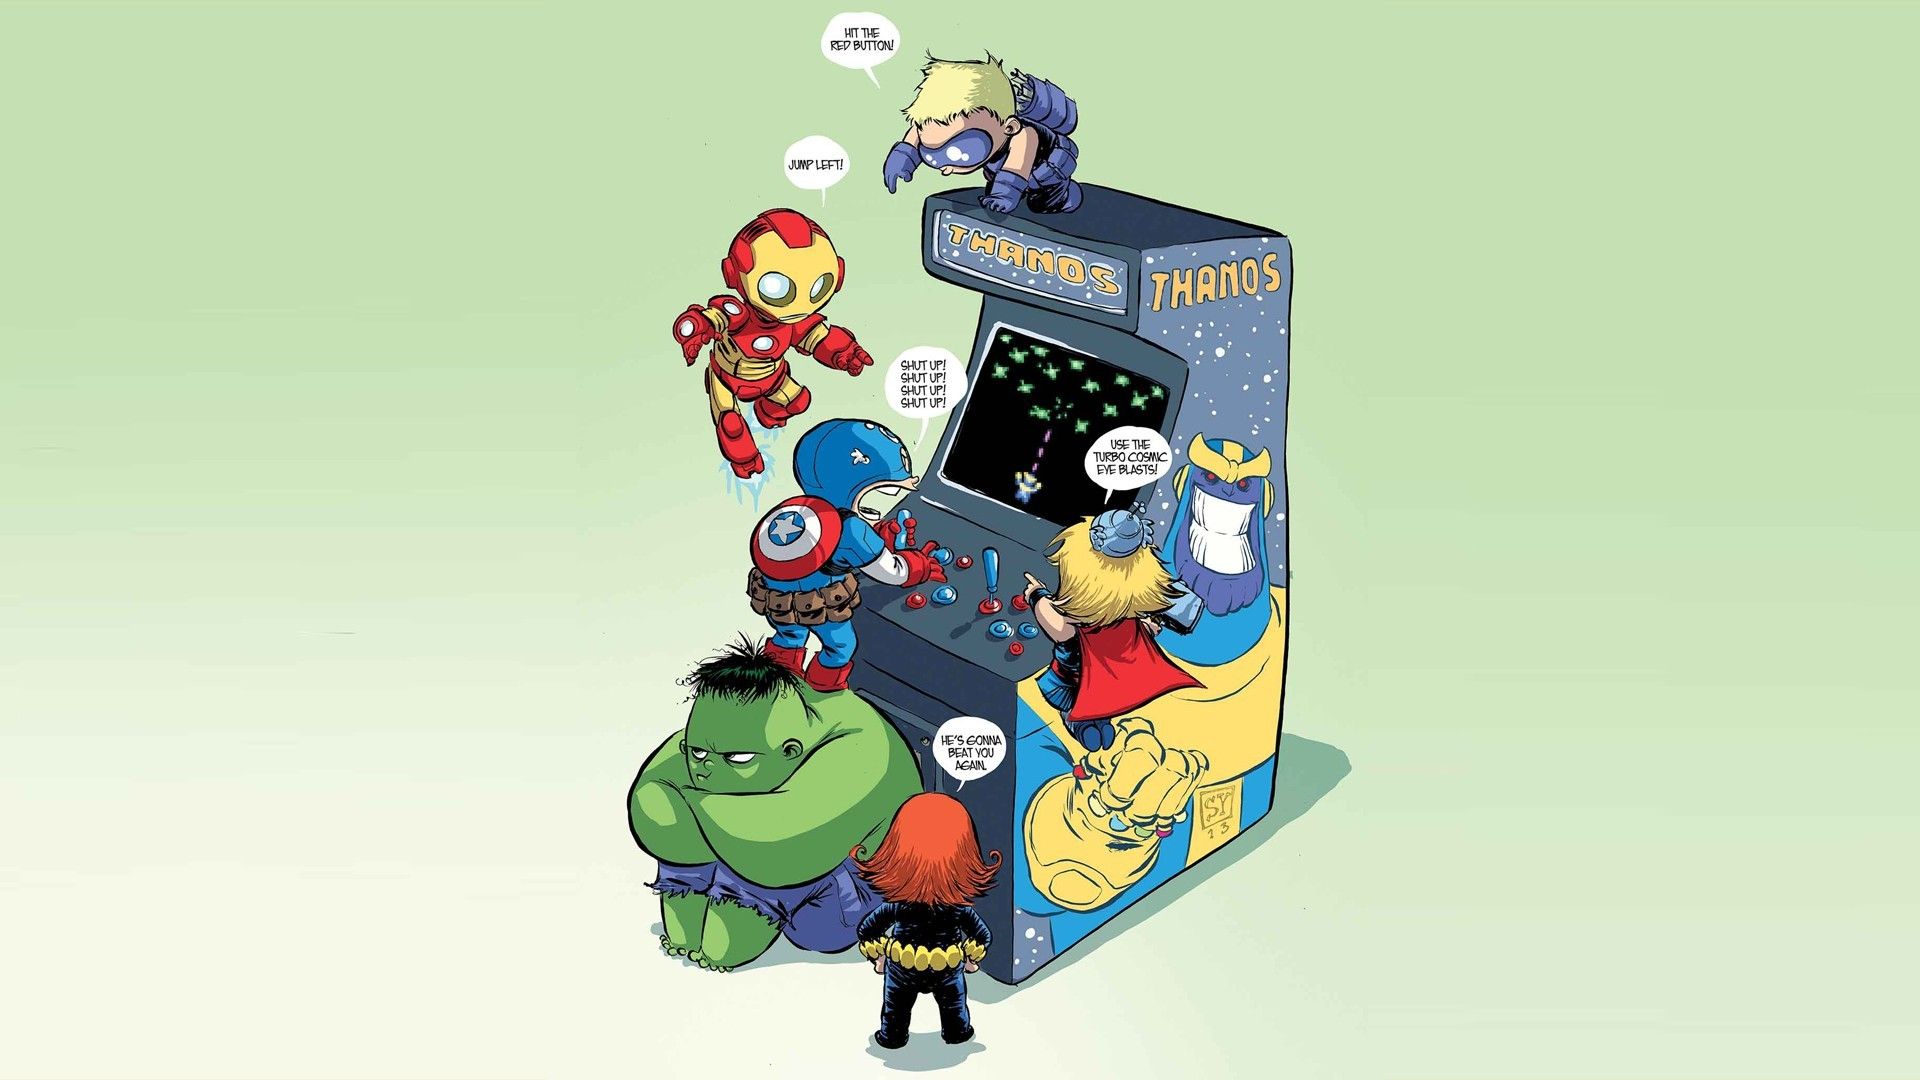 Thanos, Avengers, Thor, Captain America, Iron Man, Avengers Endgame, Movie, Marvel Comics 4k wallpaper. Mocah HD Wallpaper